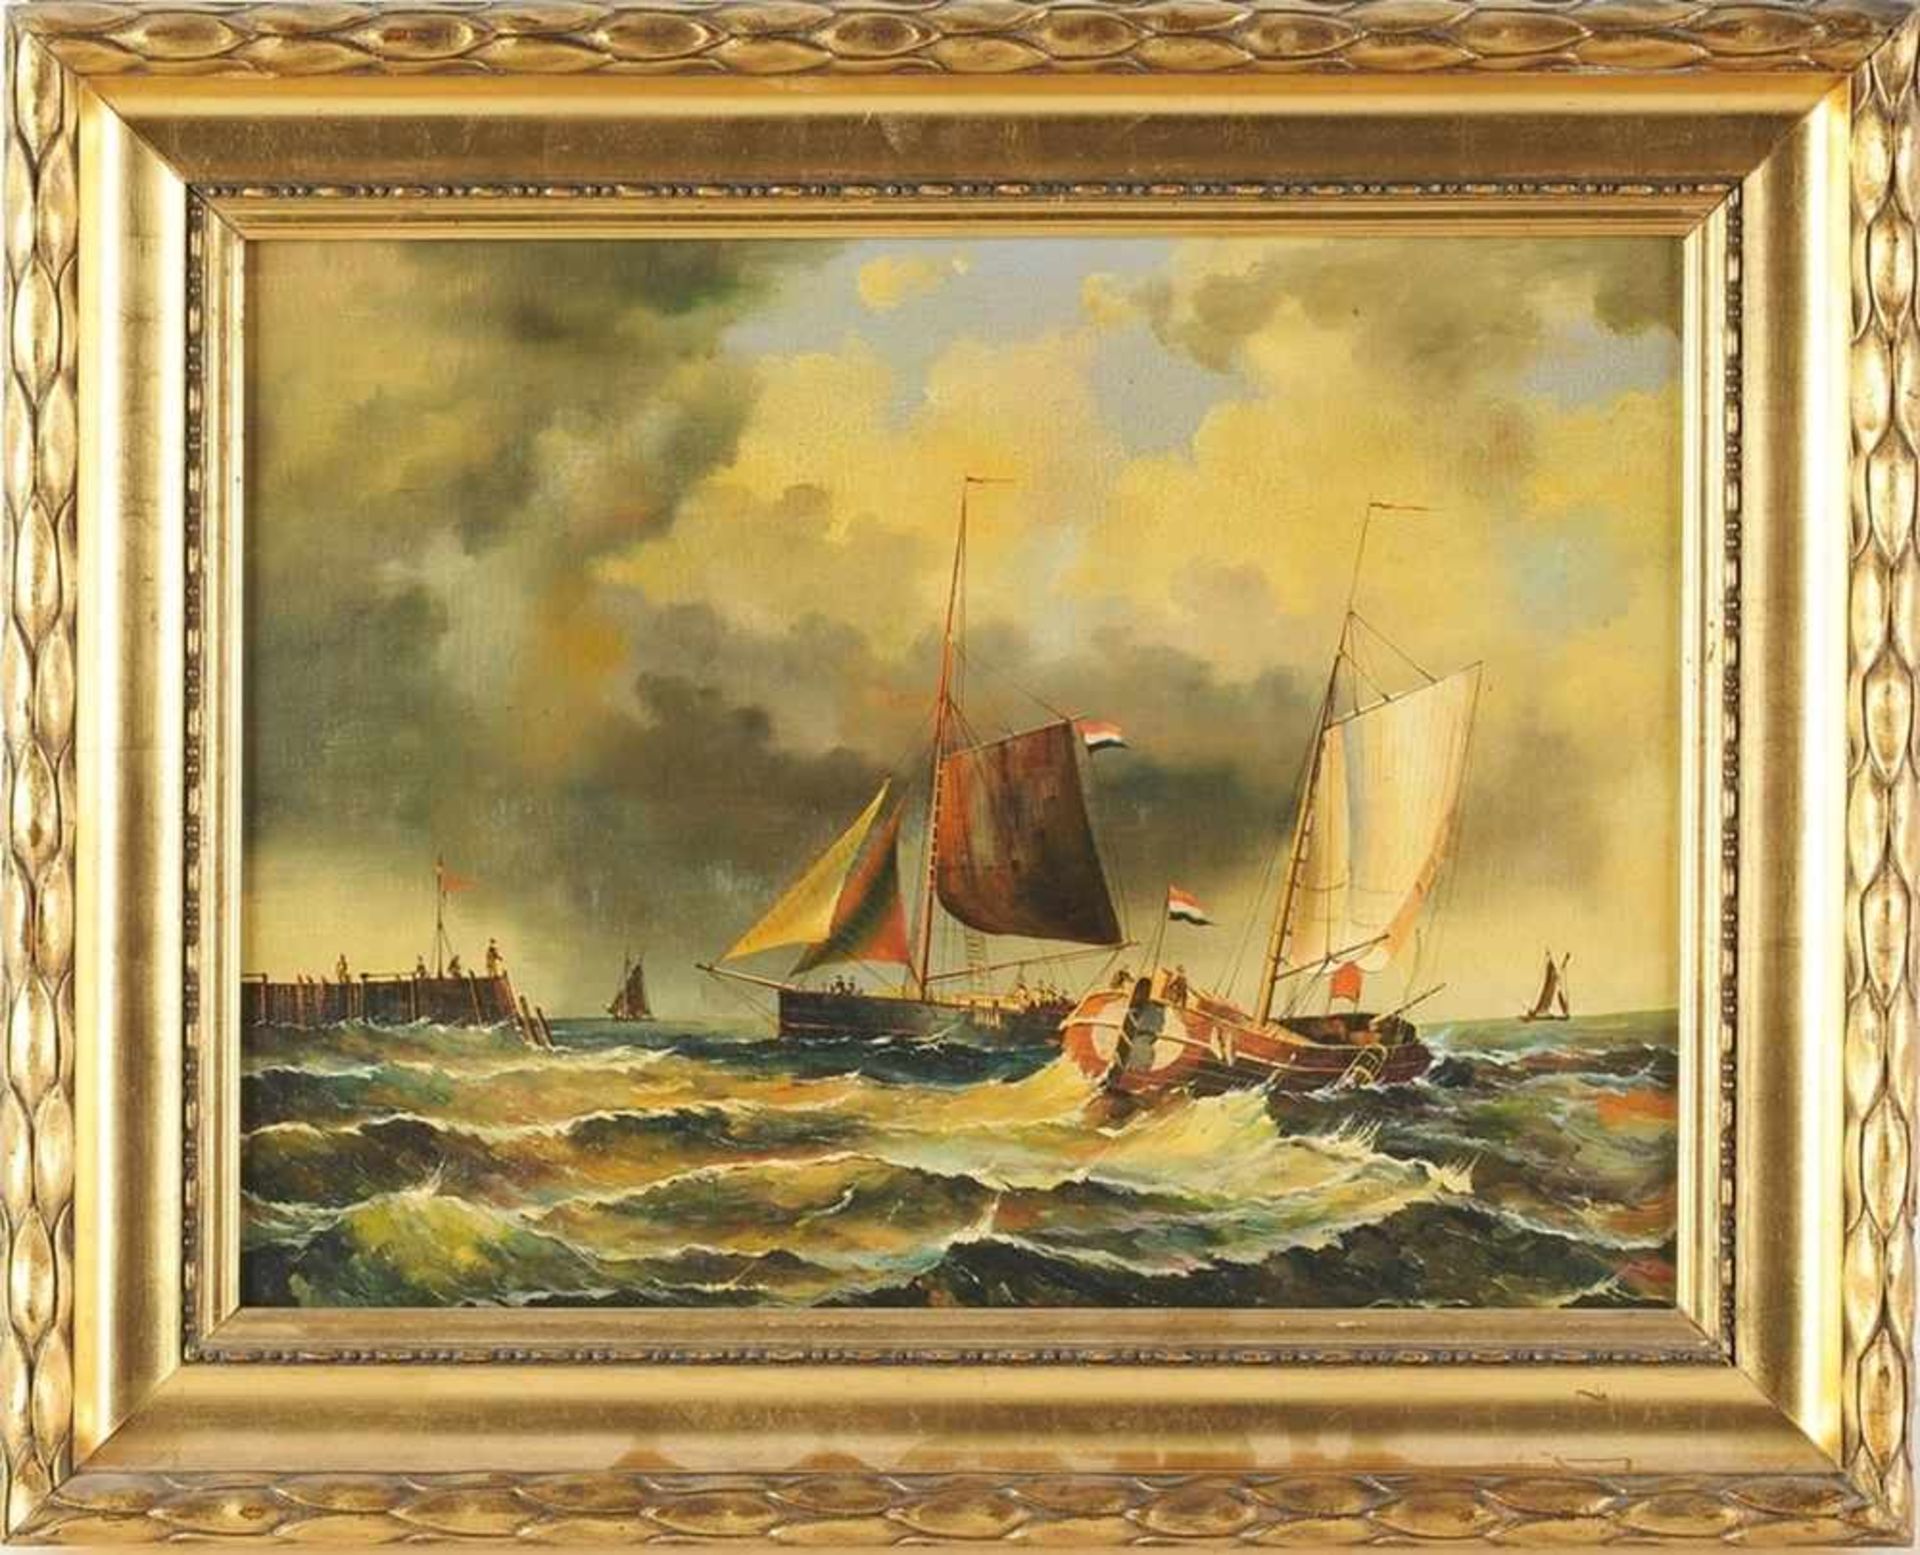 Unbekannt(Niederl. Maler, wohl 19. Jh.) Öl/Lwd. Seestück, Schiffe am Pier, mit zahlreichen